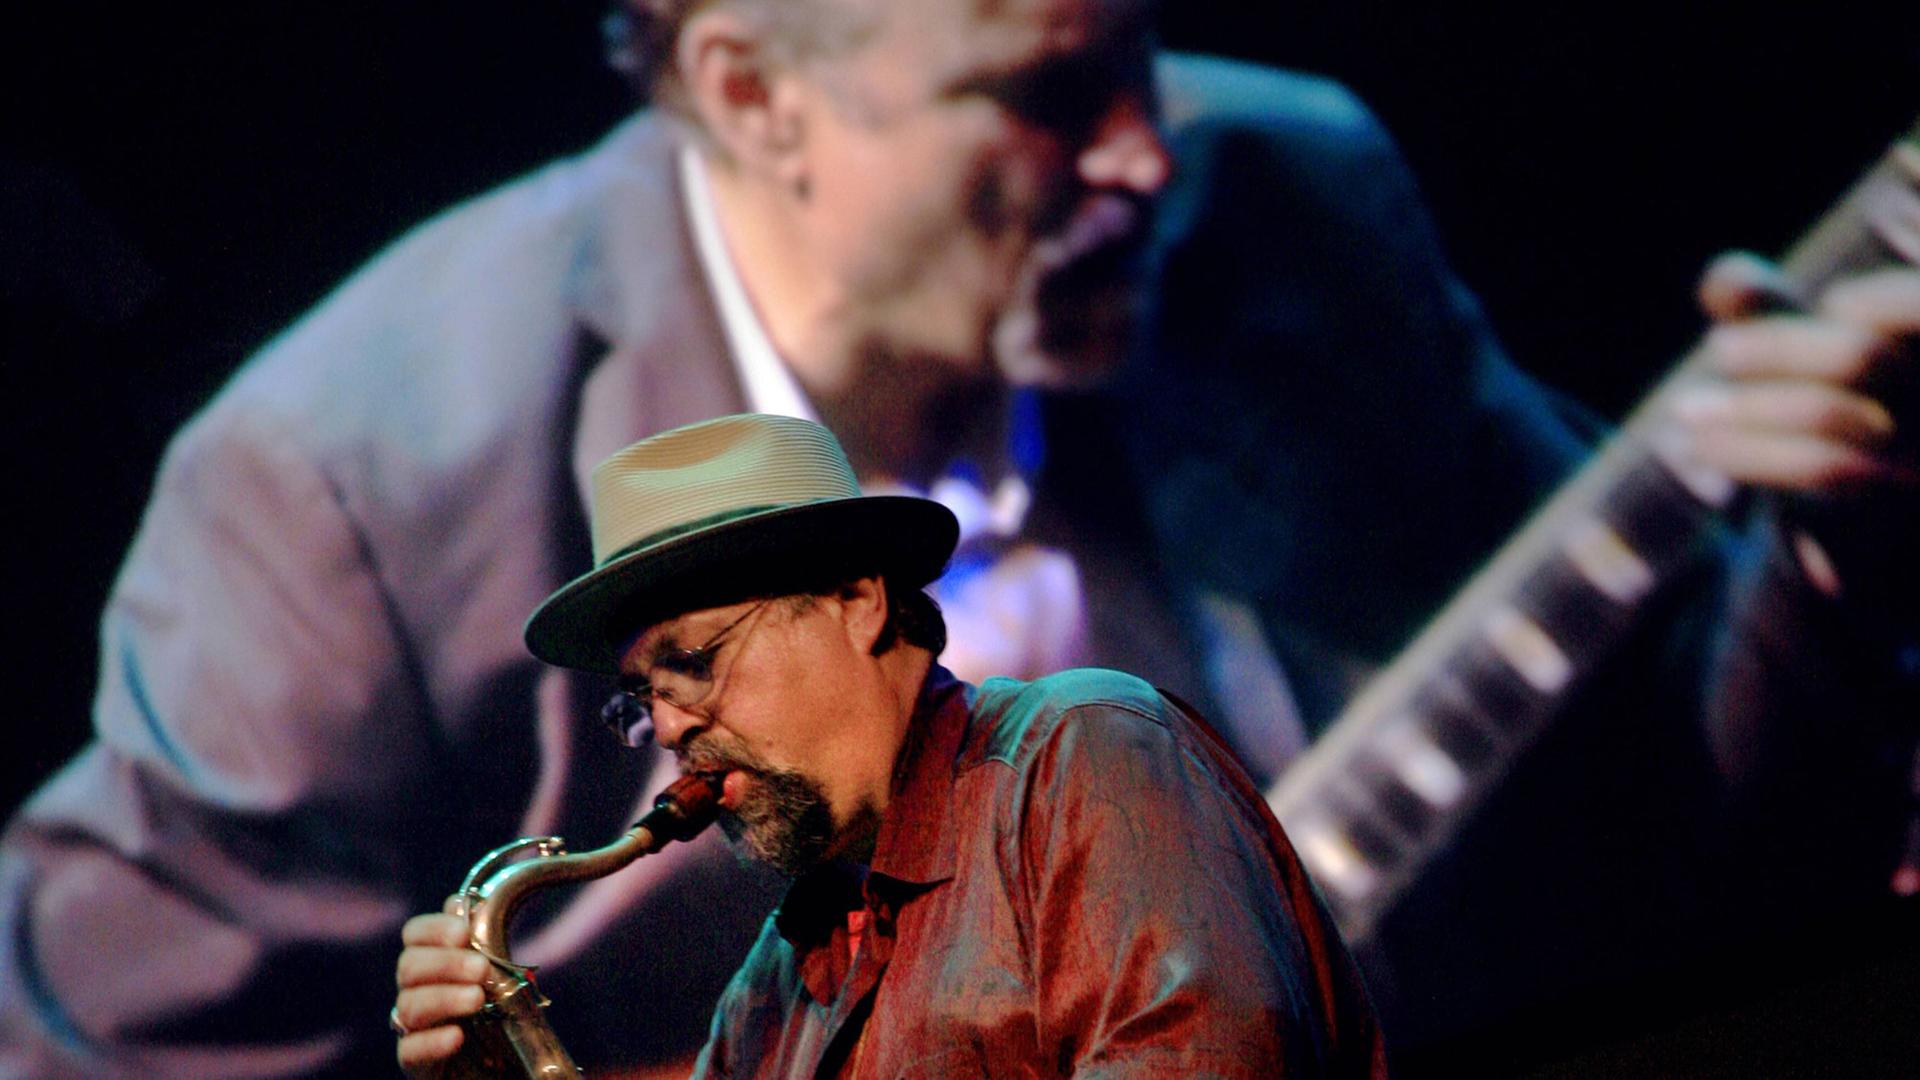 Der Saxofonist Joe Lovano und der Gitarrist John Scofield treten am 19.9.2009 gemeinsam beim Monterey Jazz Festival auf.